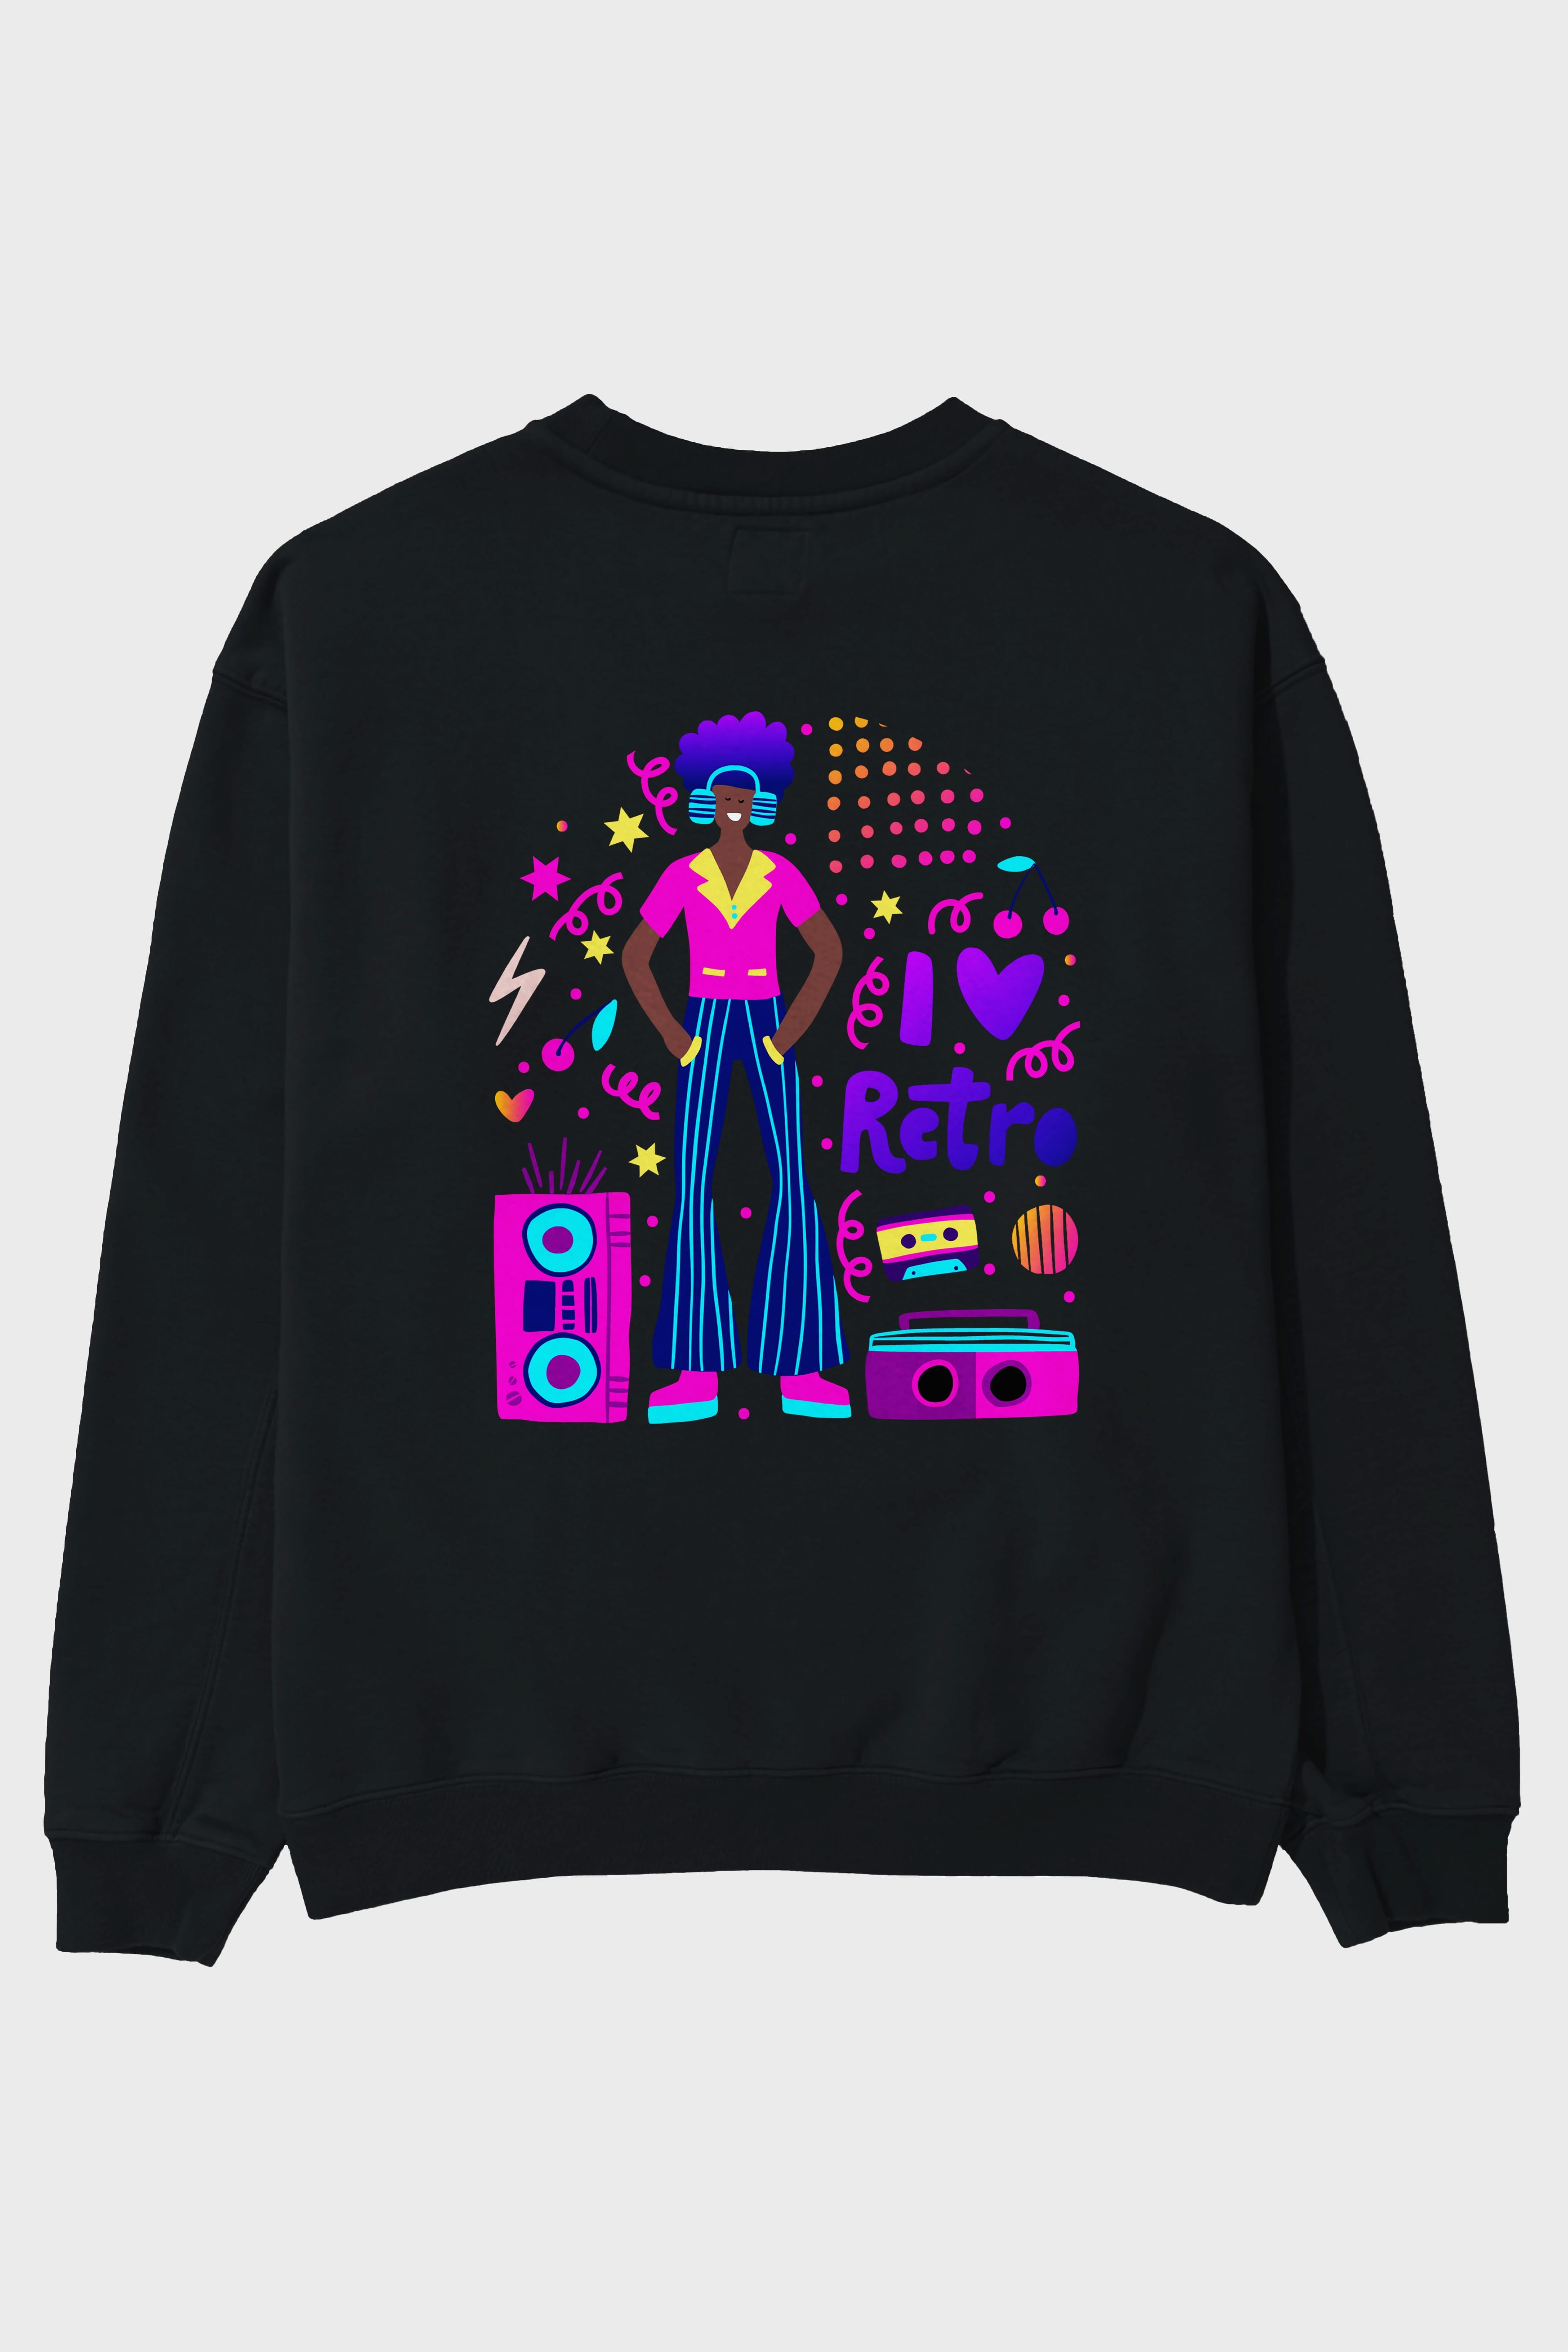 Retro Boy Party Arka Baskılı Oversize Sweatshirt Erkek Kadın Unisex